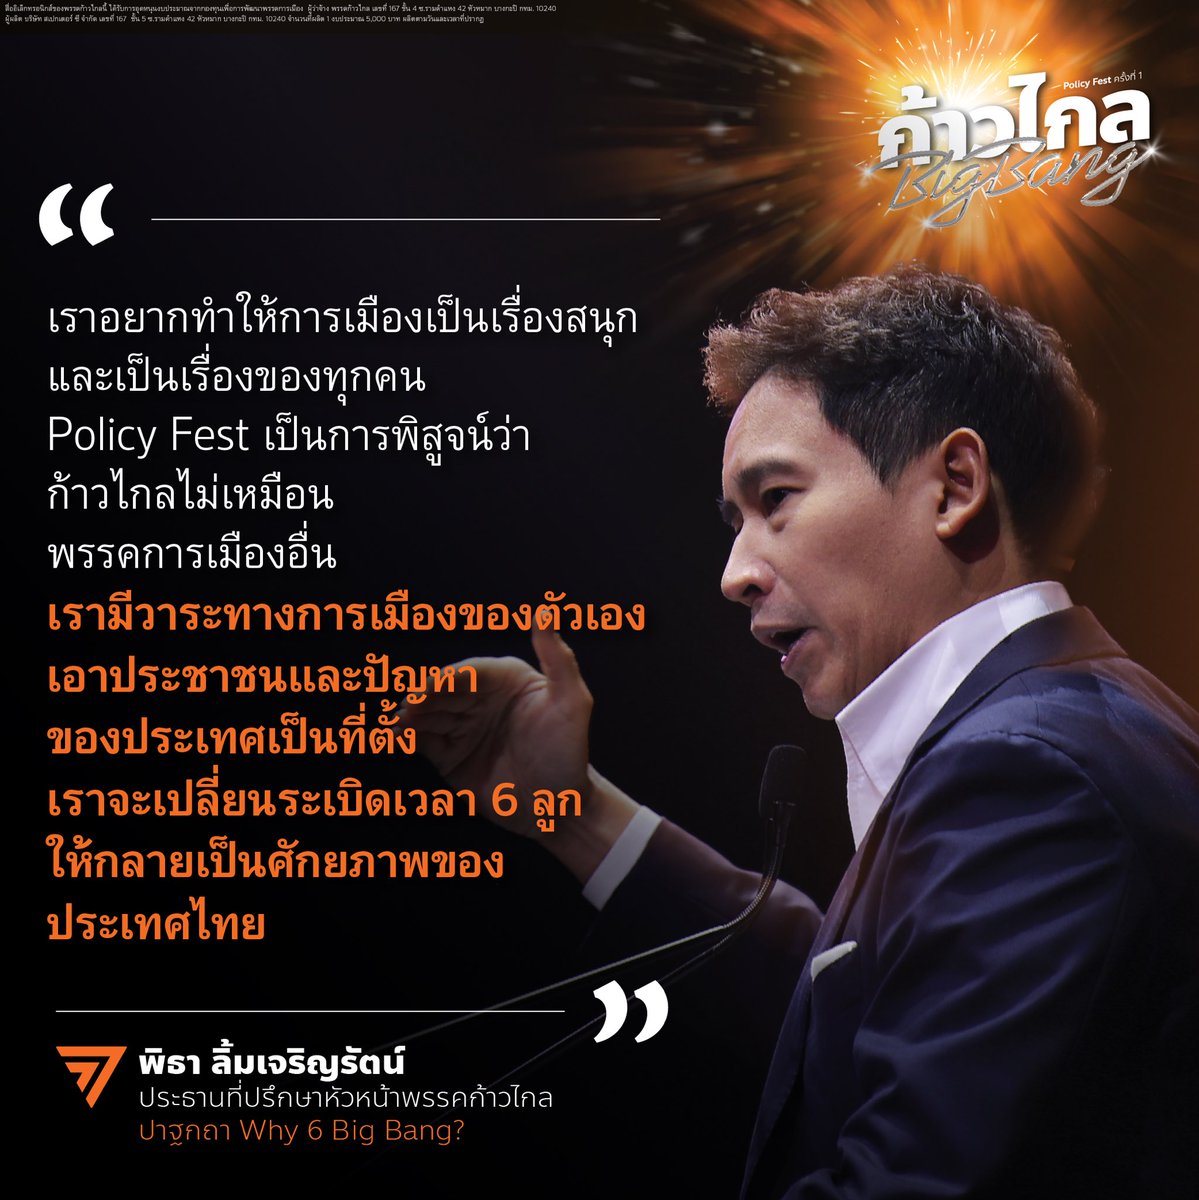 💥[ 6 วาระก้าวไกล เปลี่ยนประเทศไทยแบบ Big Bang ] พิธา ลิ้มเจริญรัตน์ @Pita_MFP ประธานที่ปรึกษาหัวหน้าพรรคก้าวไกล ปาฐกถาเป็นคนแรกในมหกรรมนโยบาย Policy Fest ครั้งที่ 1 “ก้าวไกล Big Bang” กล่าวว่า พรรคก้าวไกลจัดงาน Policy Fest มีนโยบาย (Policy) และเทศกาล (Festival) อยู่ในคำเดียวกัน